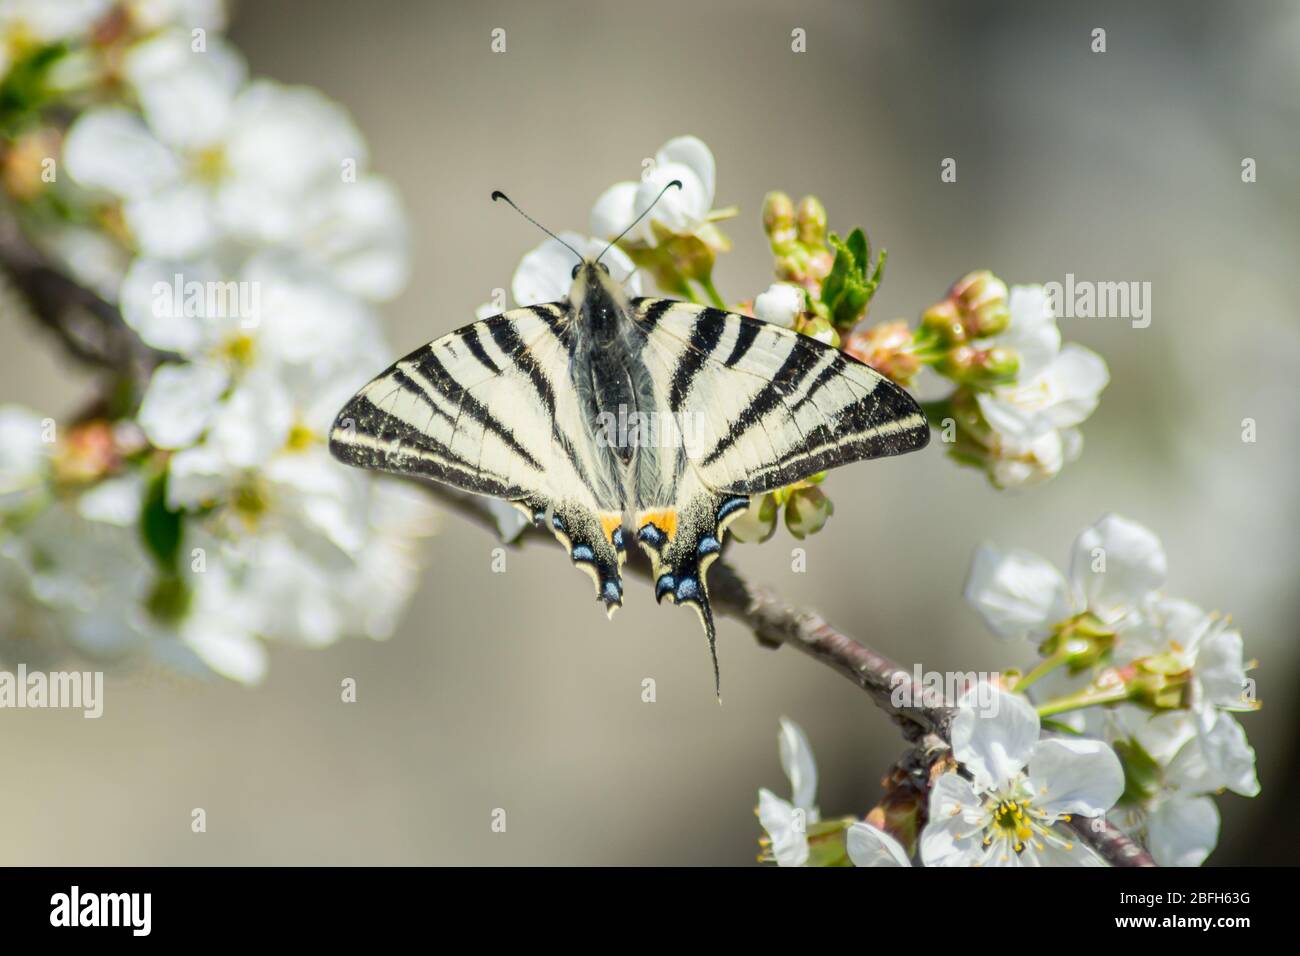 Ostschwalbenschwanz oder Papilio glaucus Schmetterling thront auf schönen weißen blühenden Sauerkirsche Baum, saisonale Flora, Insekten, Fauna, Schmetterling mit Stockfoto